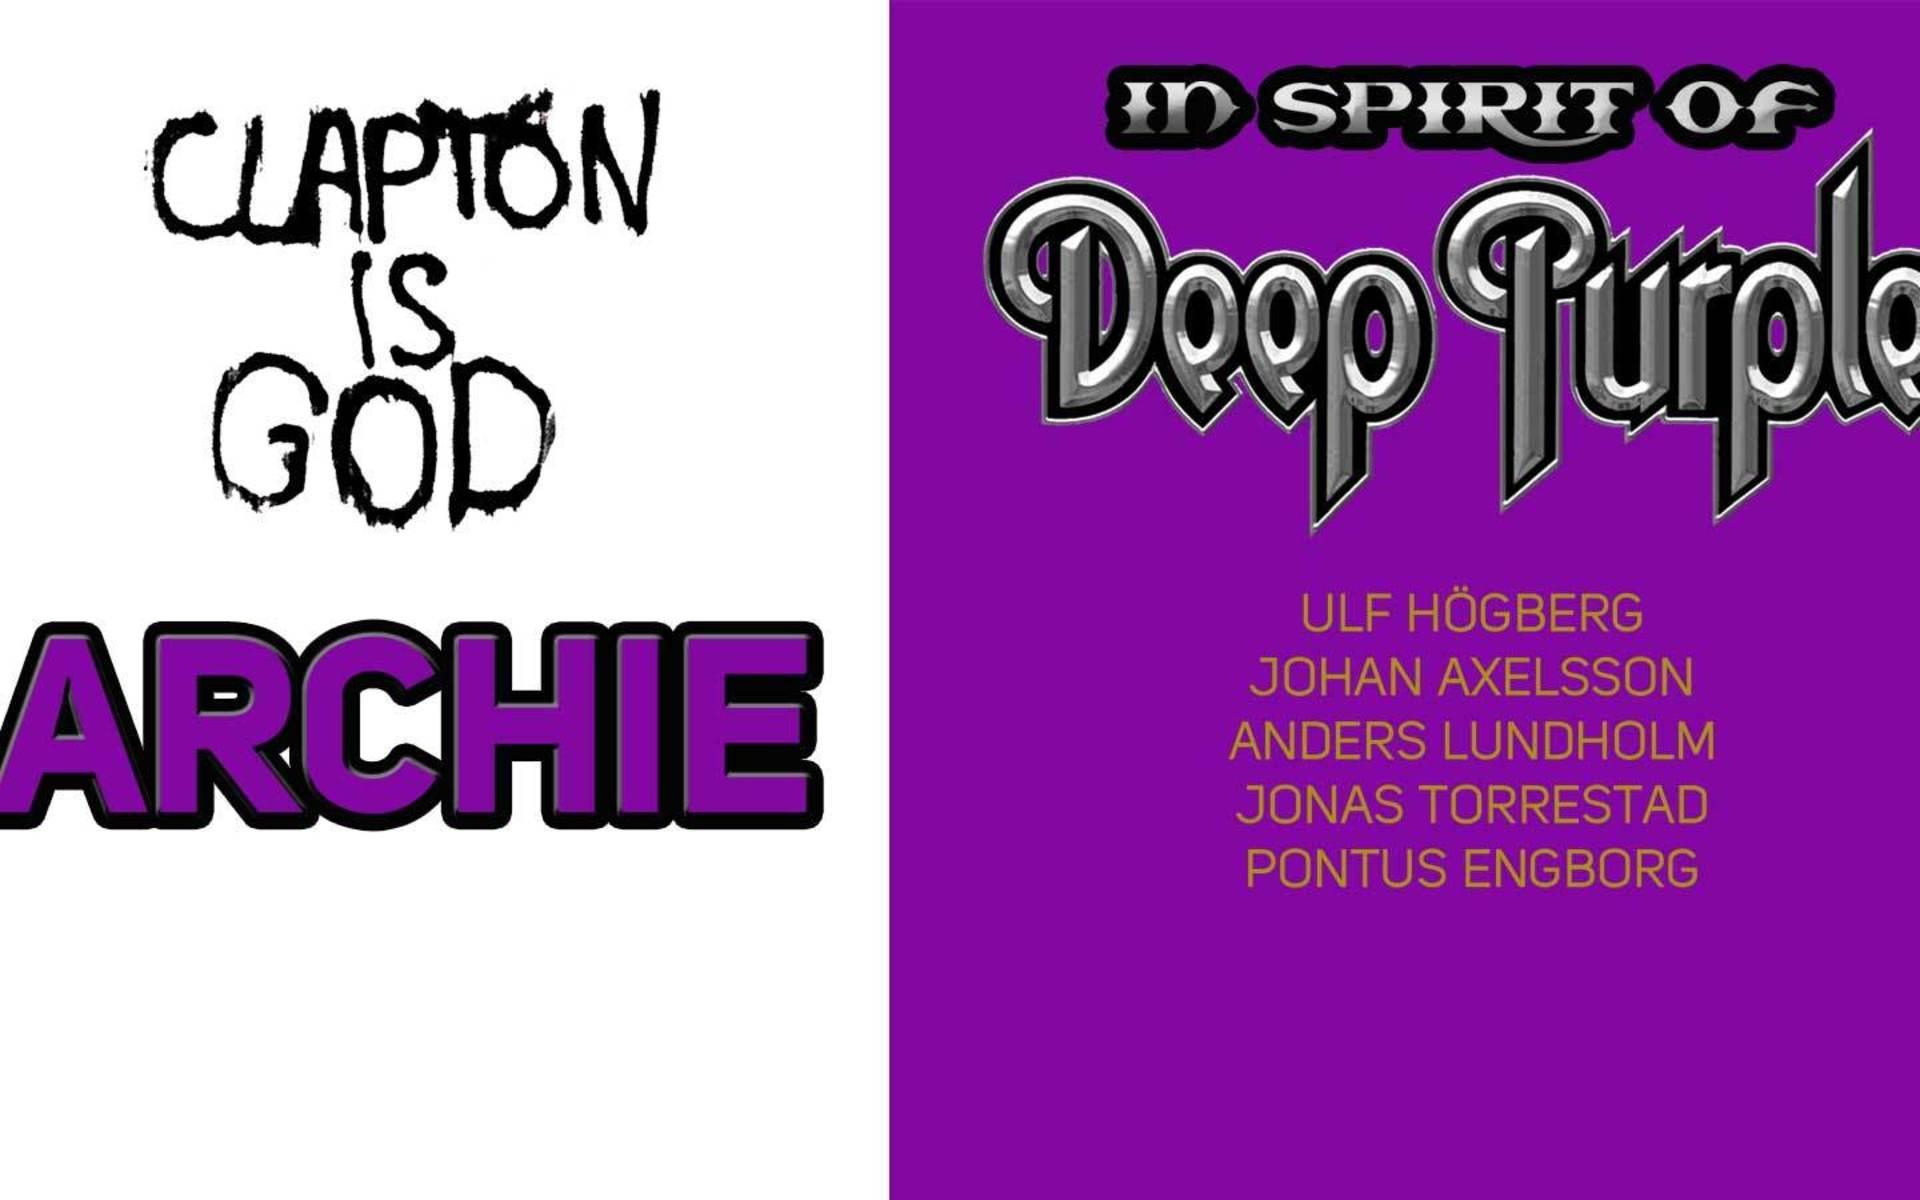 Fredag 26/11: En av alla konserter som skjutits upp gång på gång men som nu äntligen ska bli av. Archie lirar Eric Clapton och ett särskilt ihopsatt band river av ett gäng Deep Purple-dängor i Kulturbaren, Trollhättan.